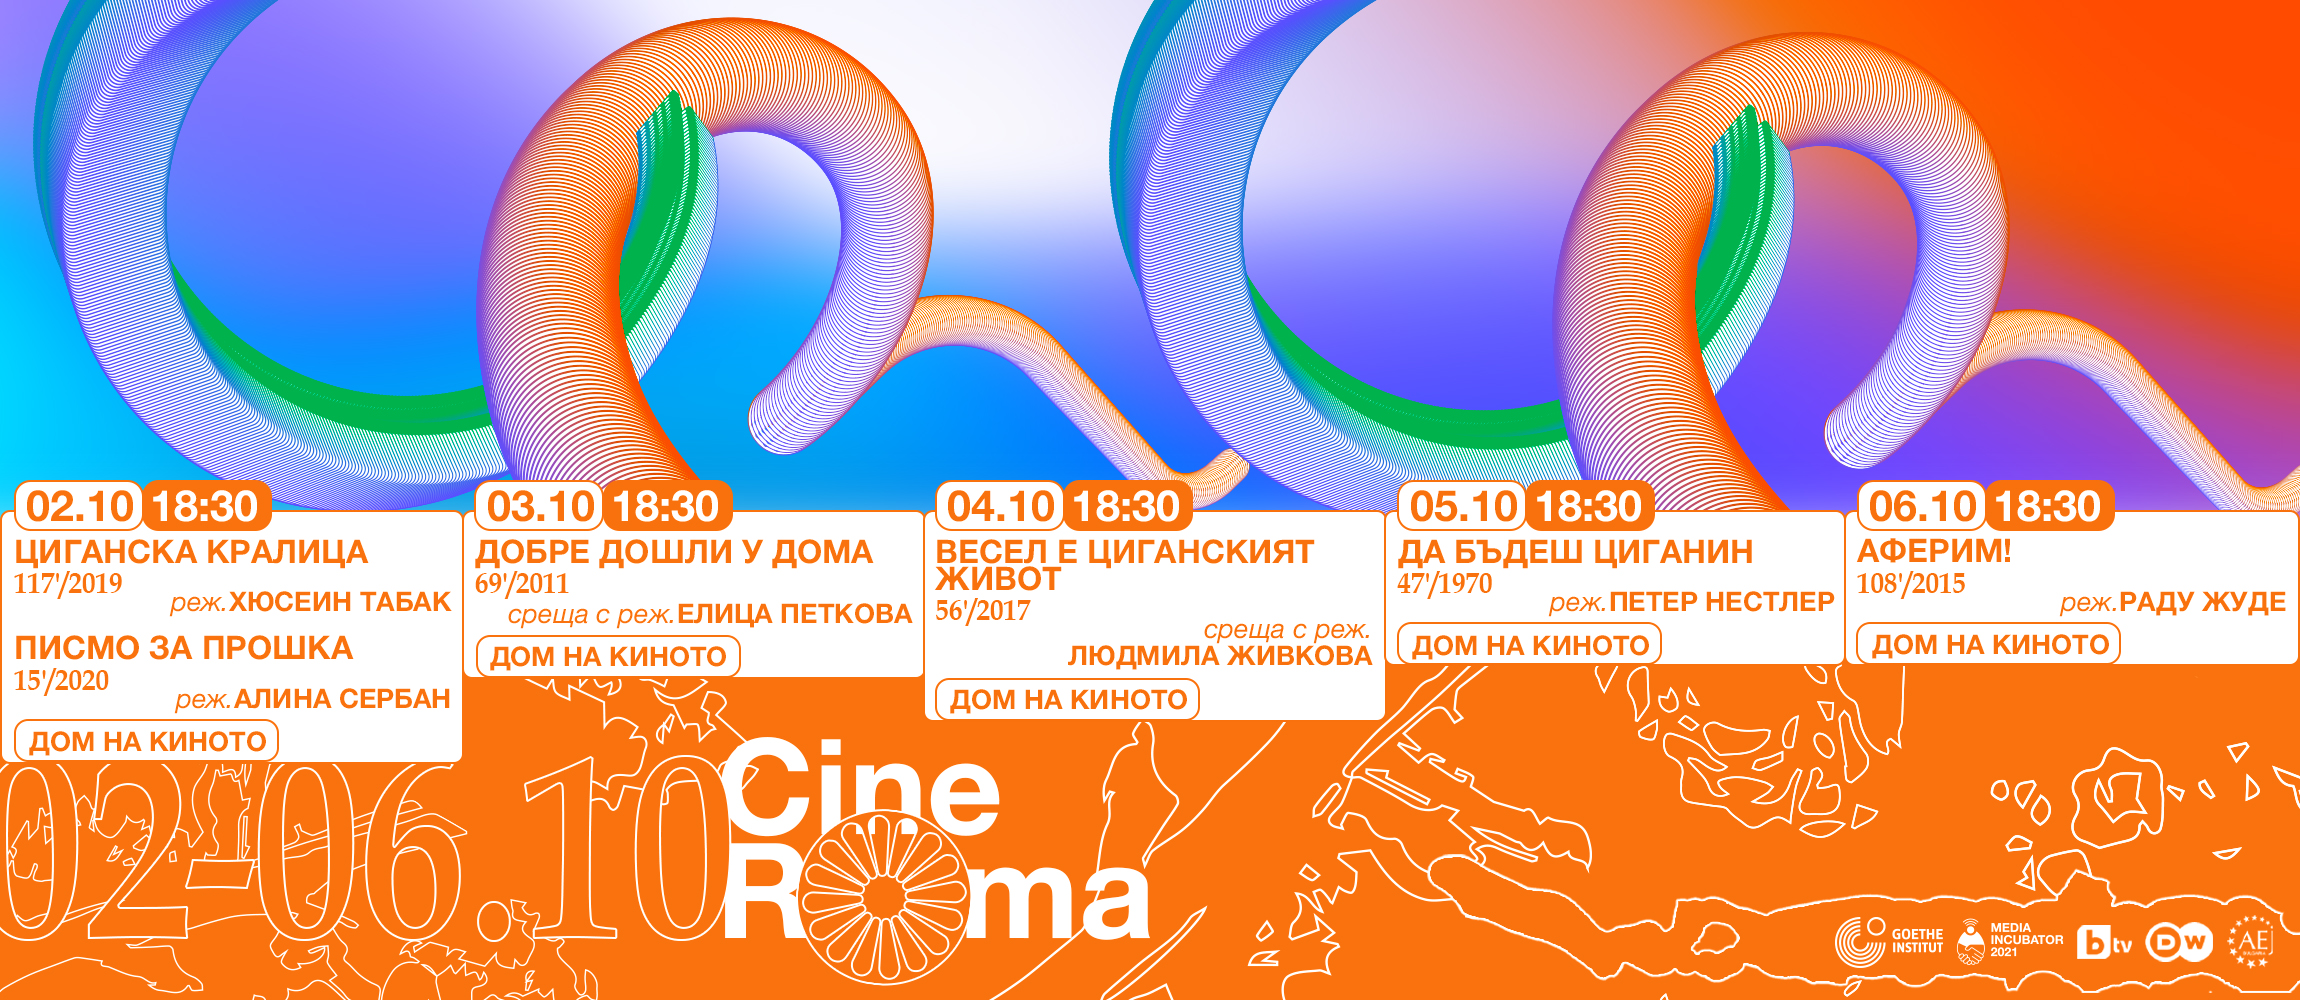 Програмната брошура на фестивала CineRoma в София